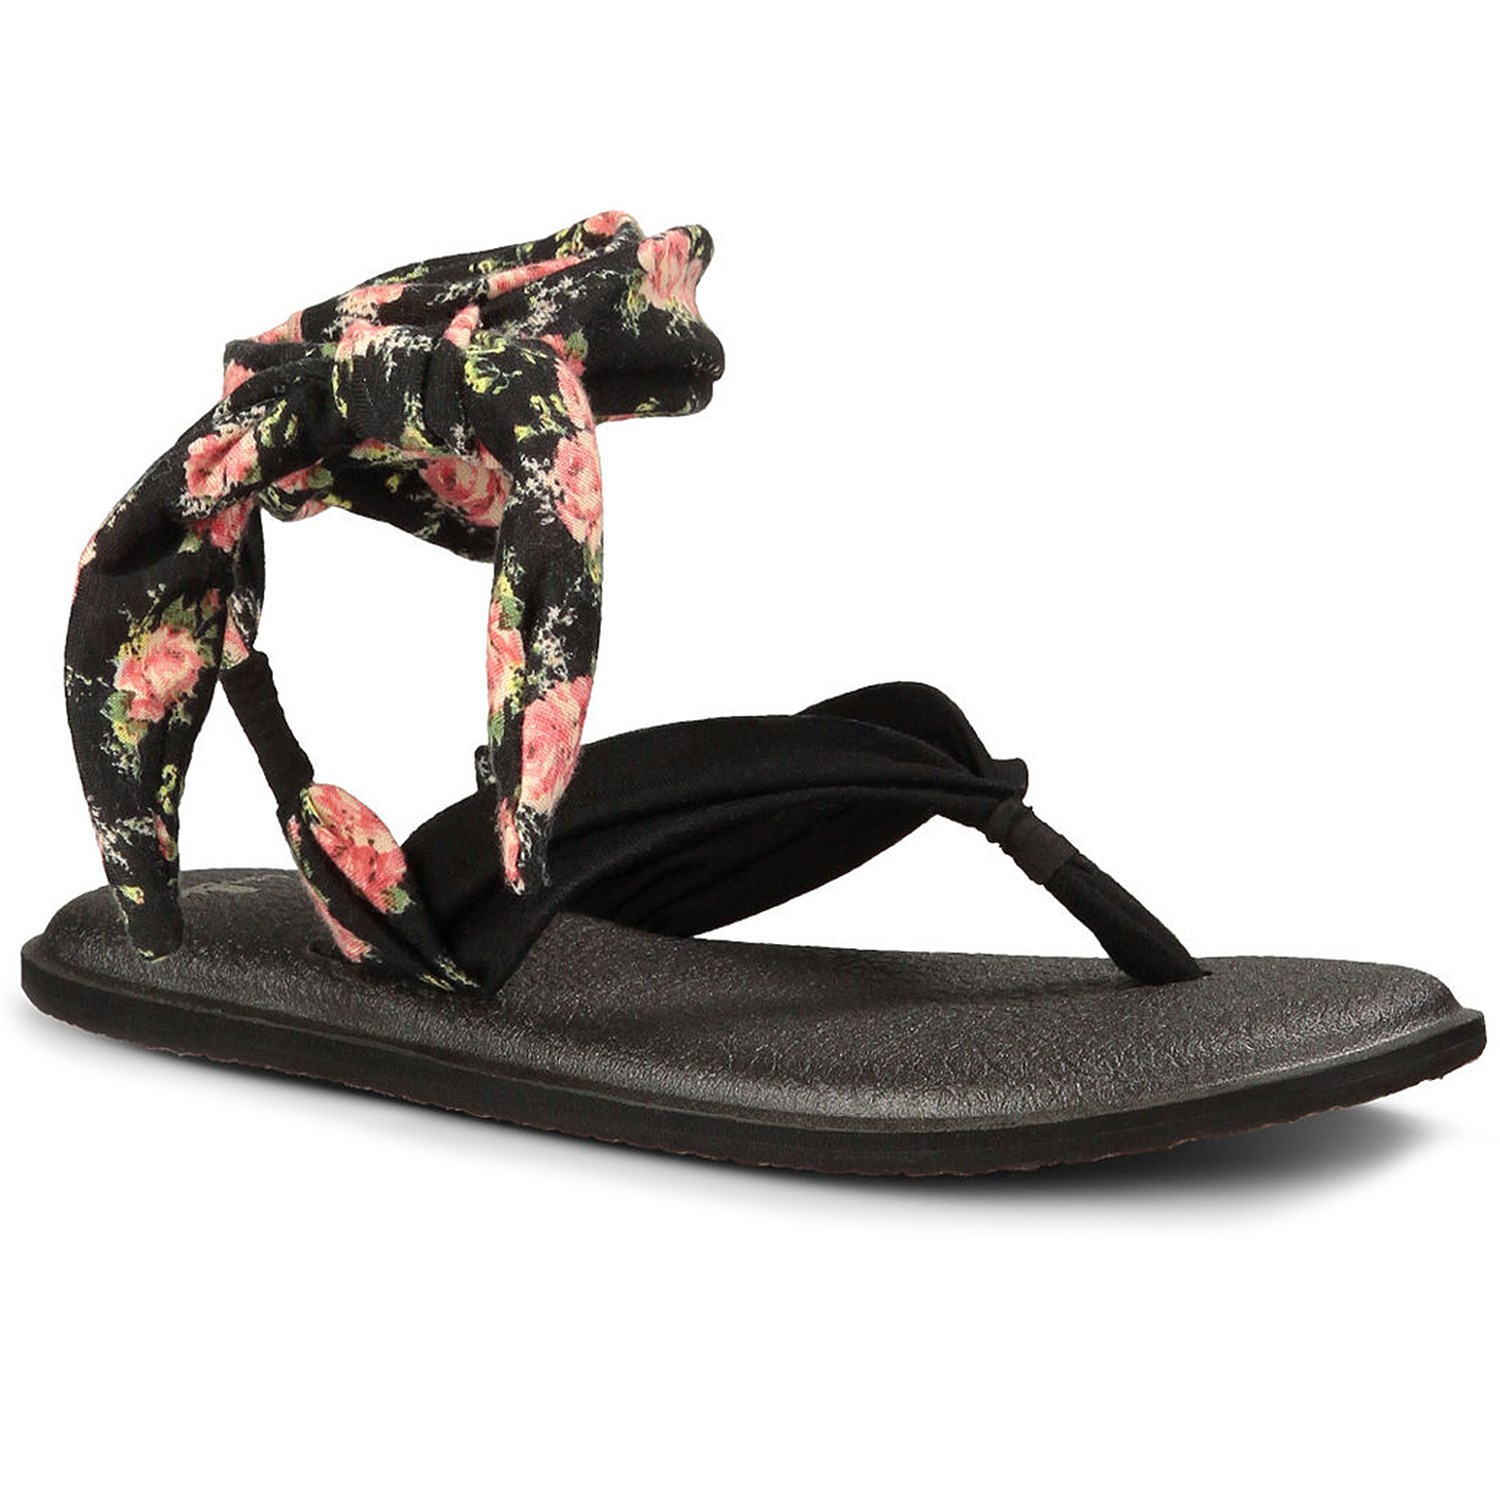 https://images.evo.com/imgp/zoom/85823/398268/sanuk-yoga-slinged-up-print-sandals-women-s-.jpg